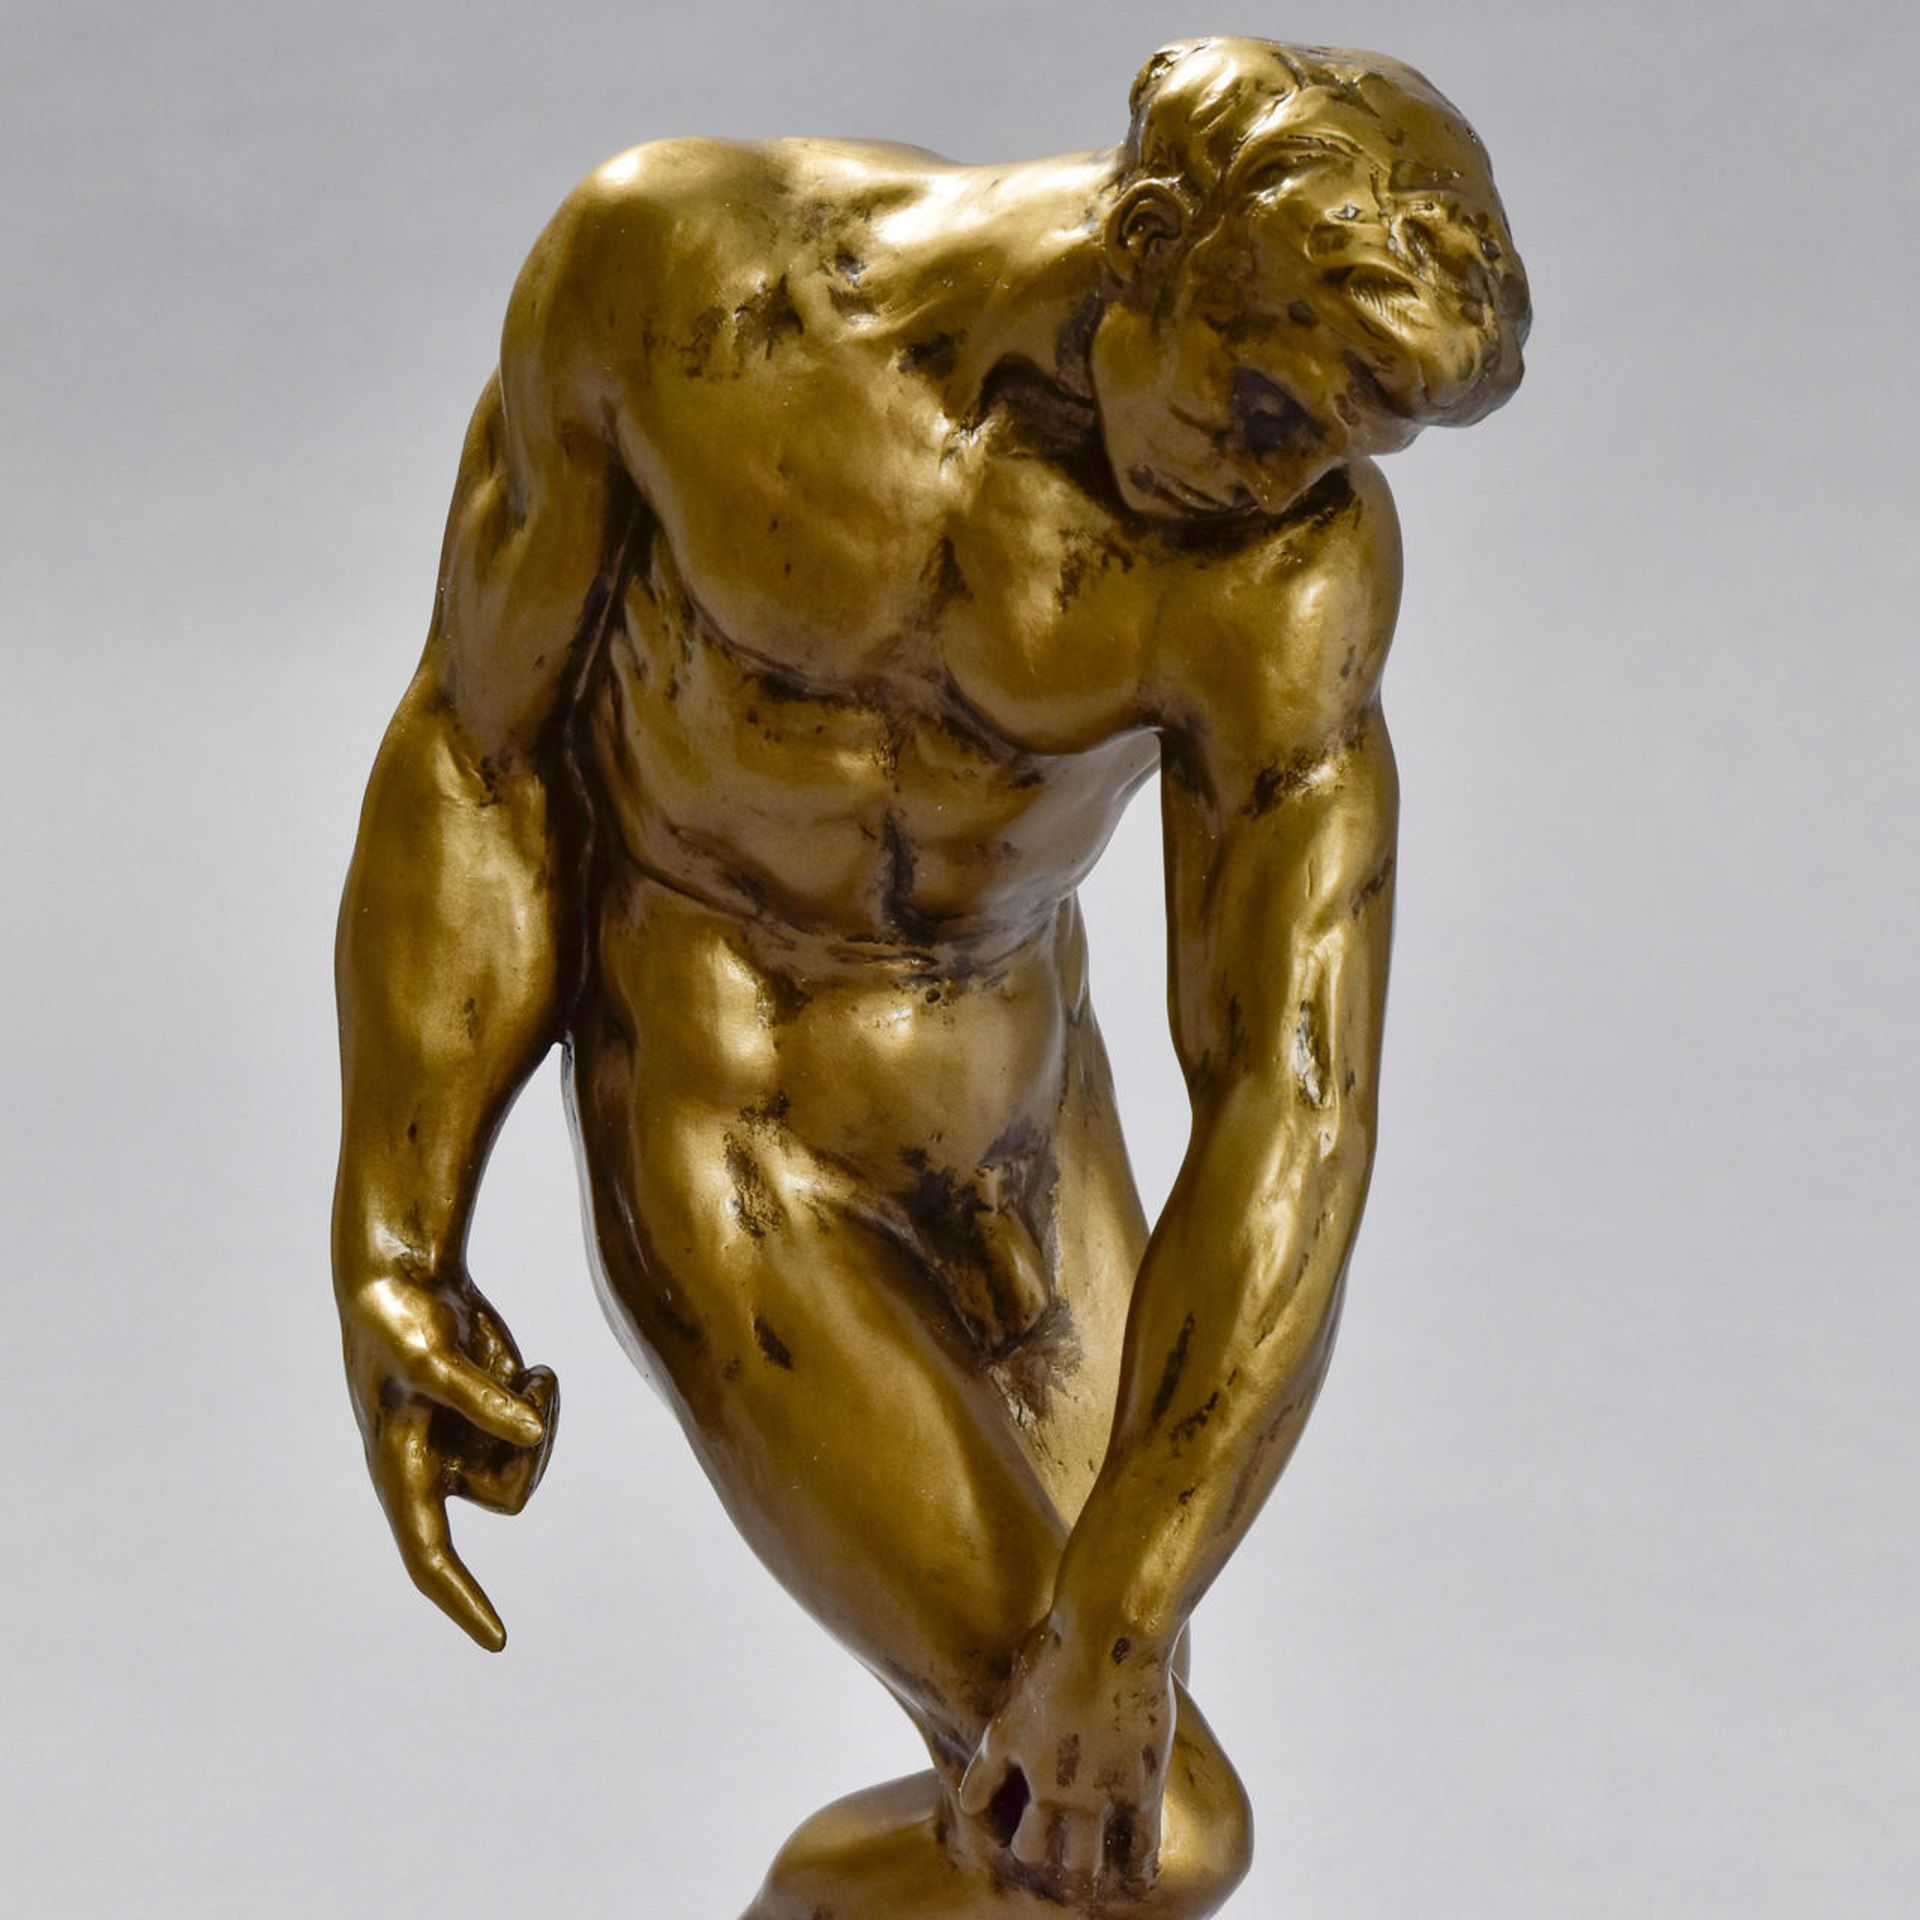 Auguste Rodin "Adam" Sculpture - Image 2 of 5